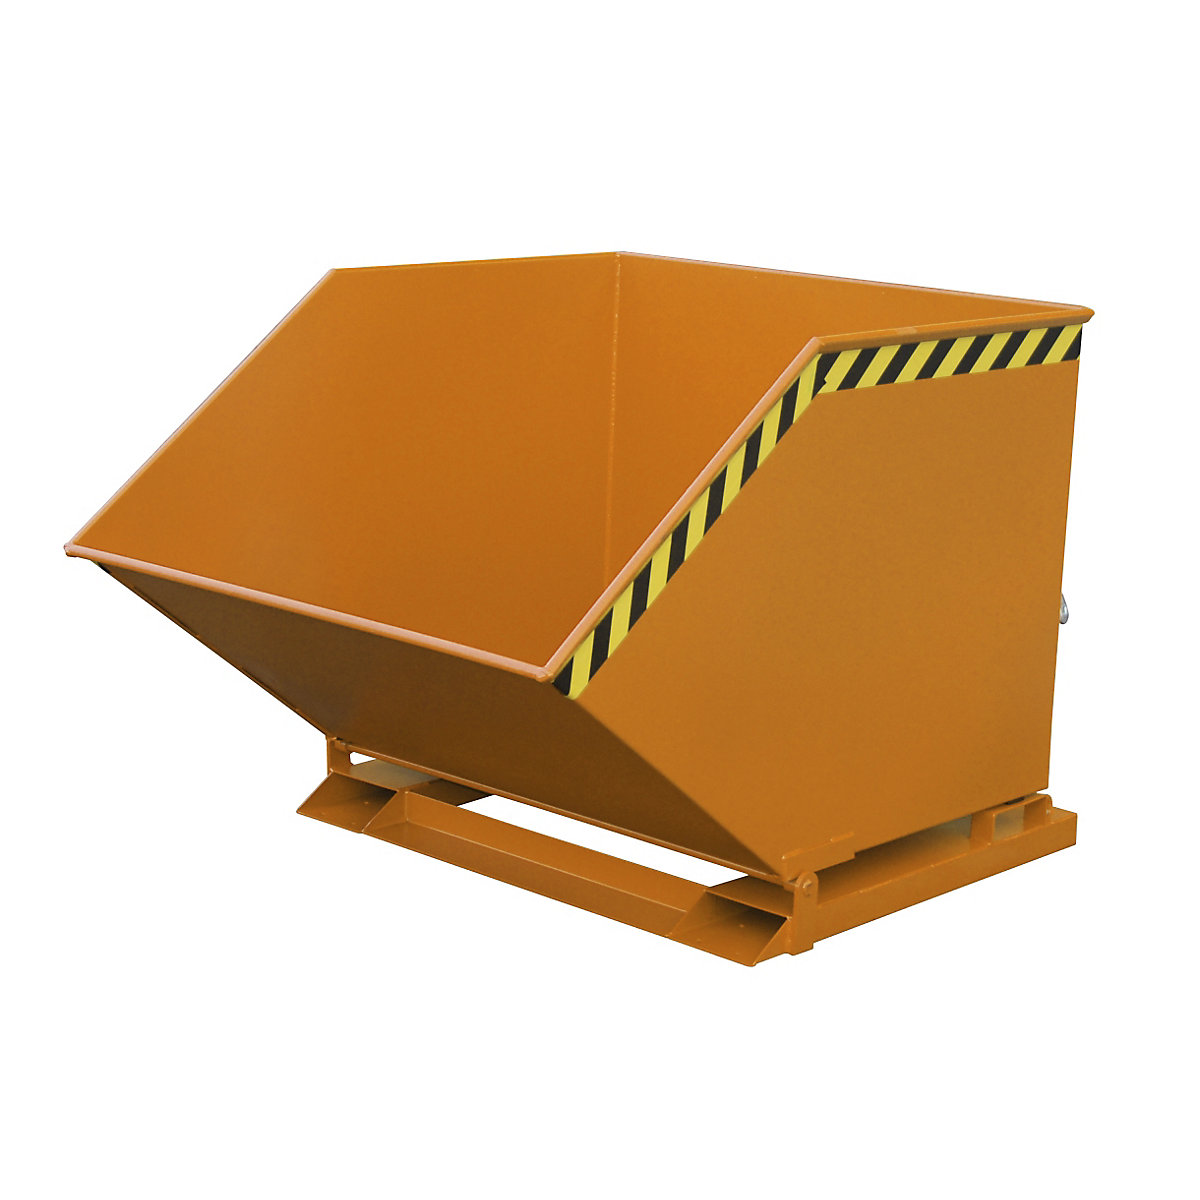 Cavidade de basculação com mecanismo basculante – eurokraft pro, forma de caixa, volume 1 m³, laranja RAL 2000-5